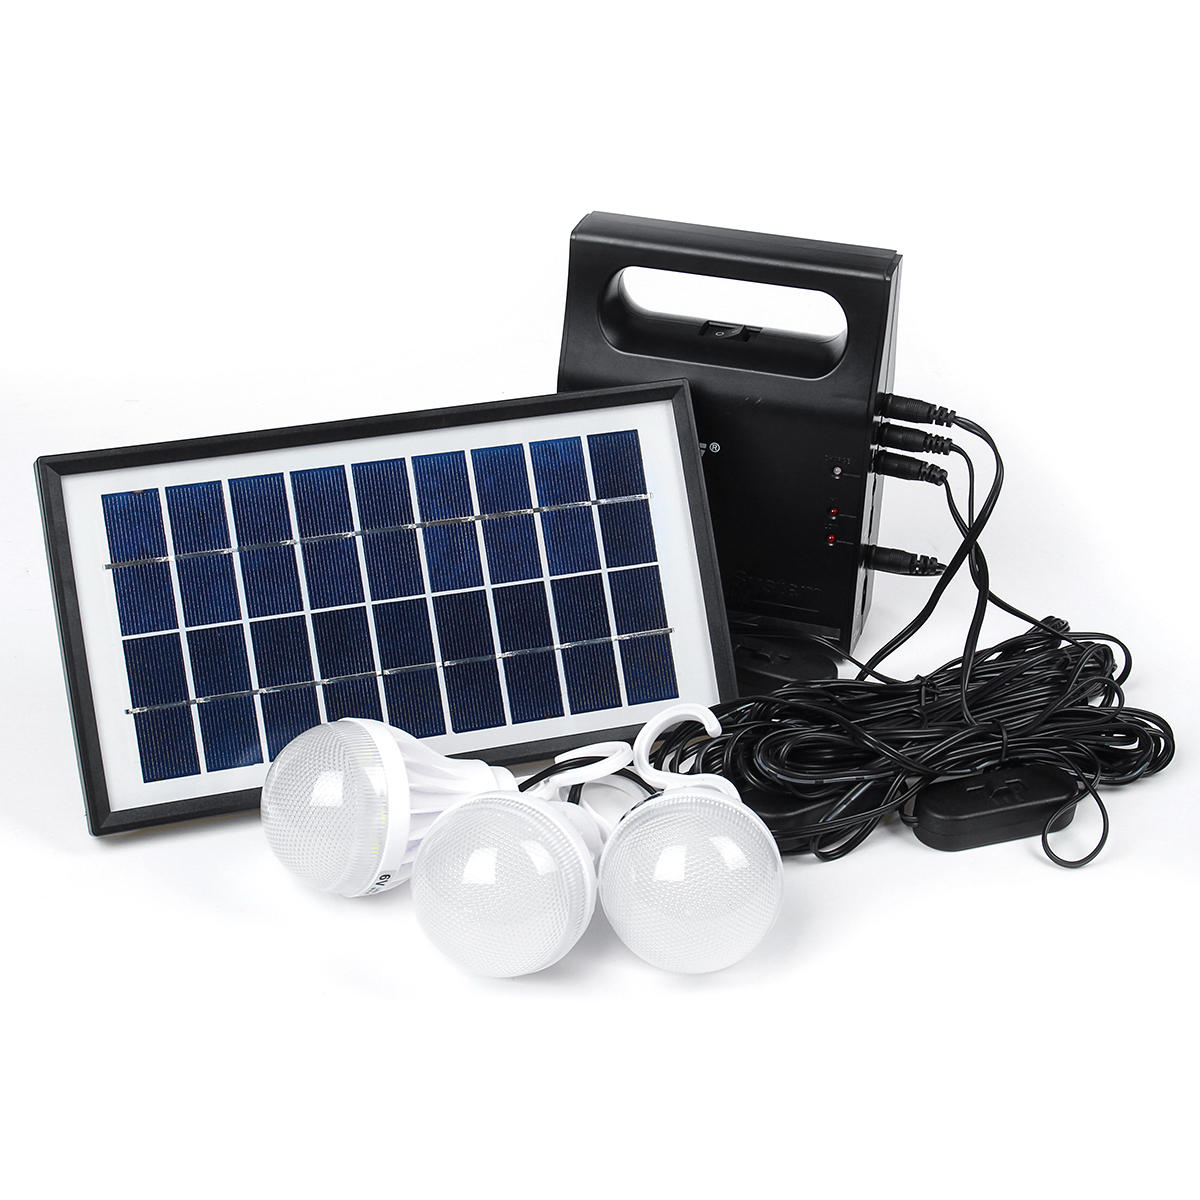 Sistema de luz de painel solar com lâmpadas LED USB de 6V para áreas externas, jardins, acampamentos e emergências